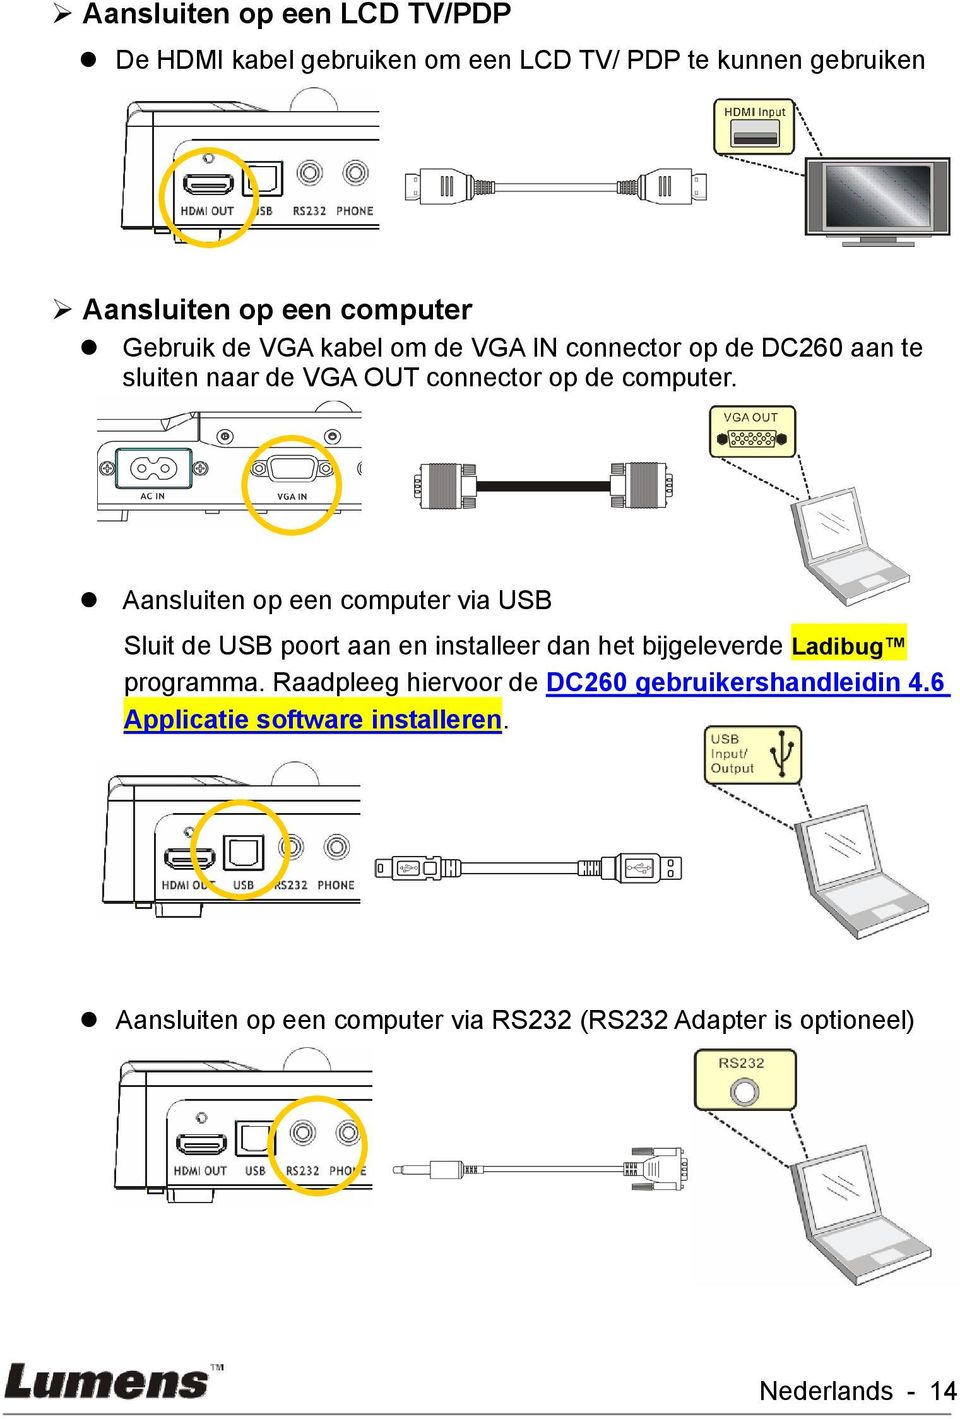 Aansluiten op een computer via USB Sluit de USB poort aan en installeer dan het bijgeleverde Ladibug programma.